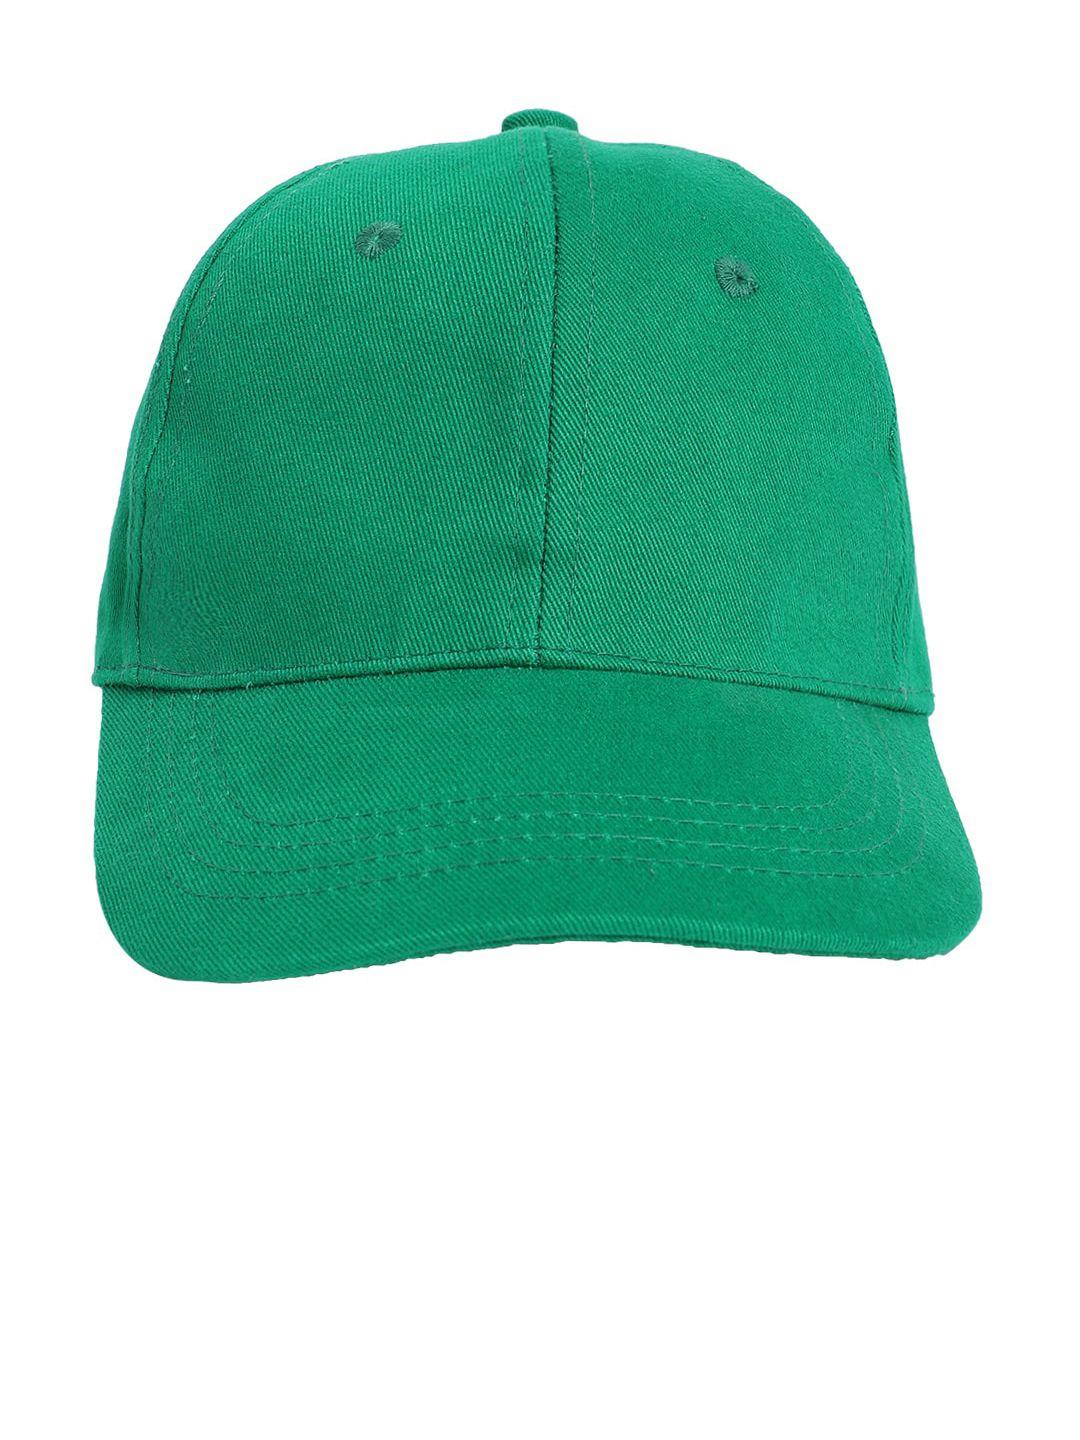 dukiekooky unisex kids green solid baseball cap